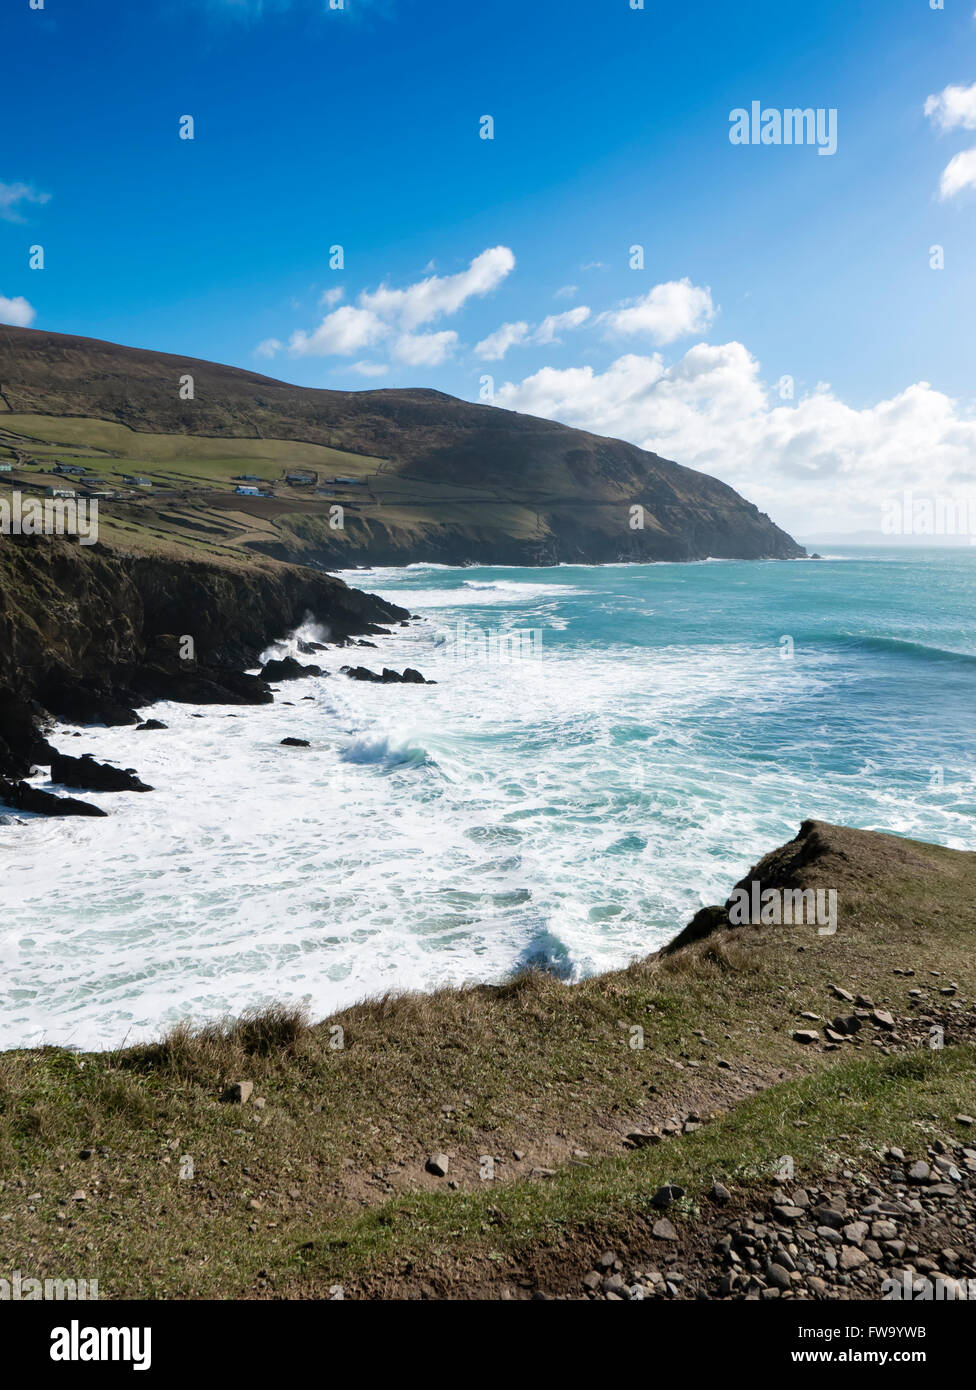 El romper de las olas en la playa en el Dunquin Slea Head, unidad de la península Dingle en el condado de Kerry, República de Irlanda. Foto de stock